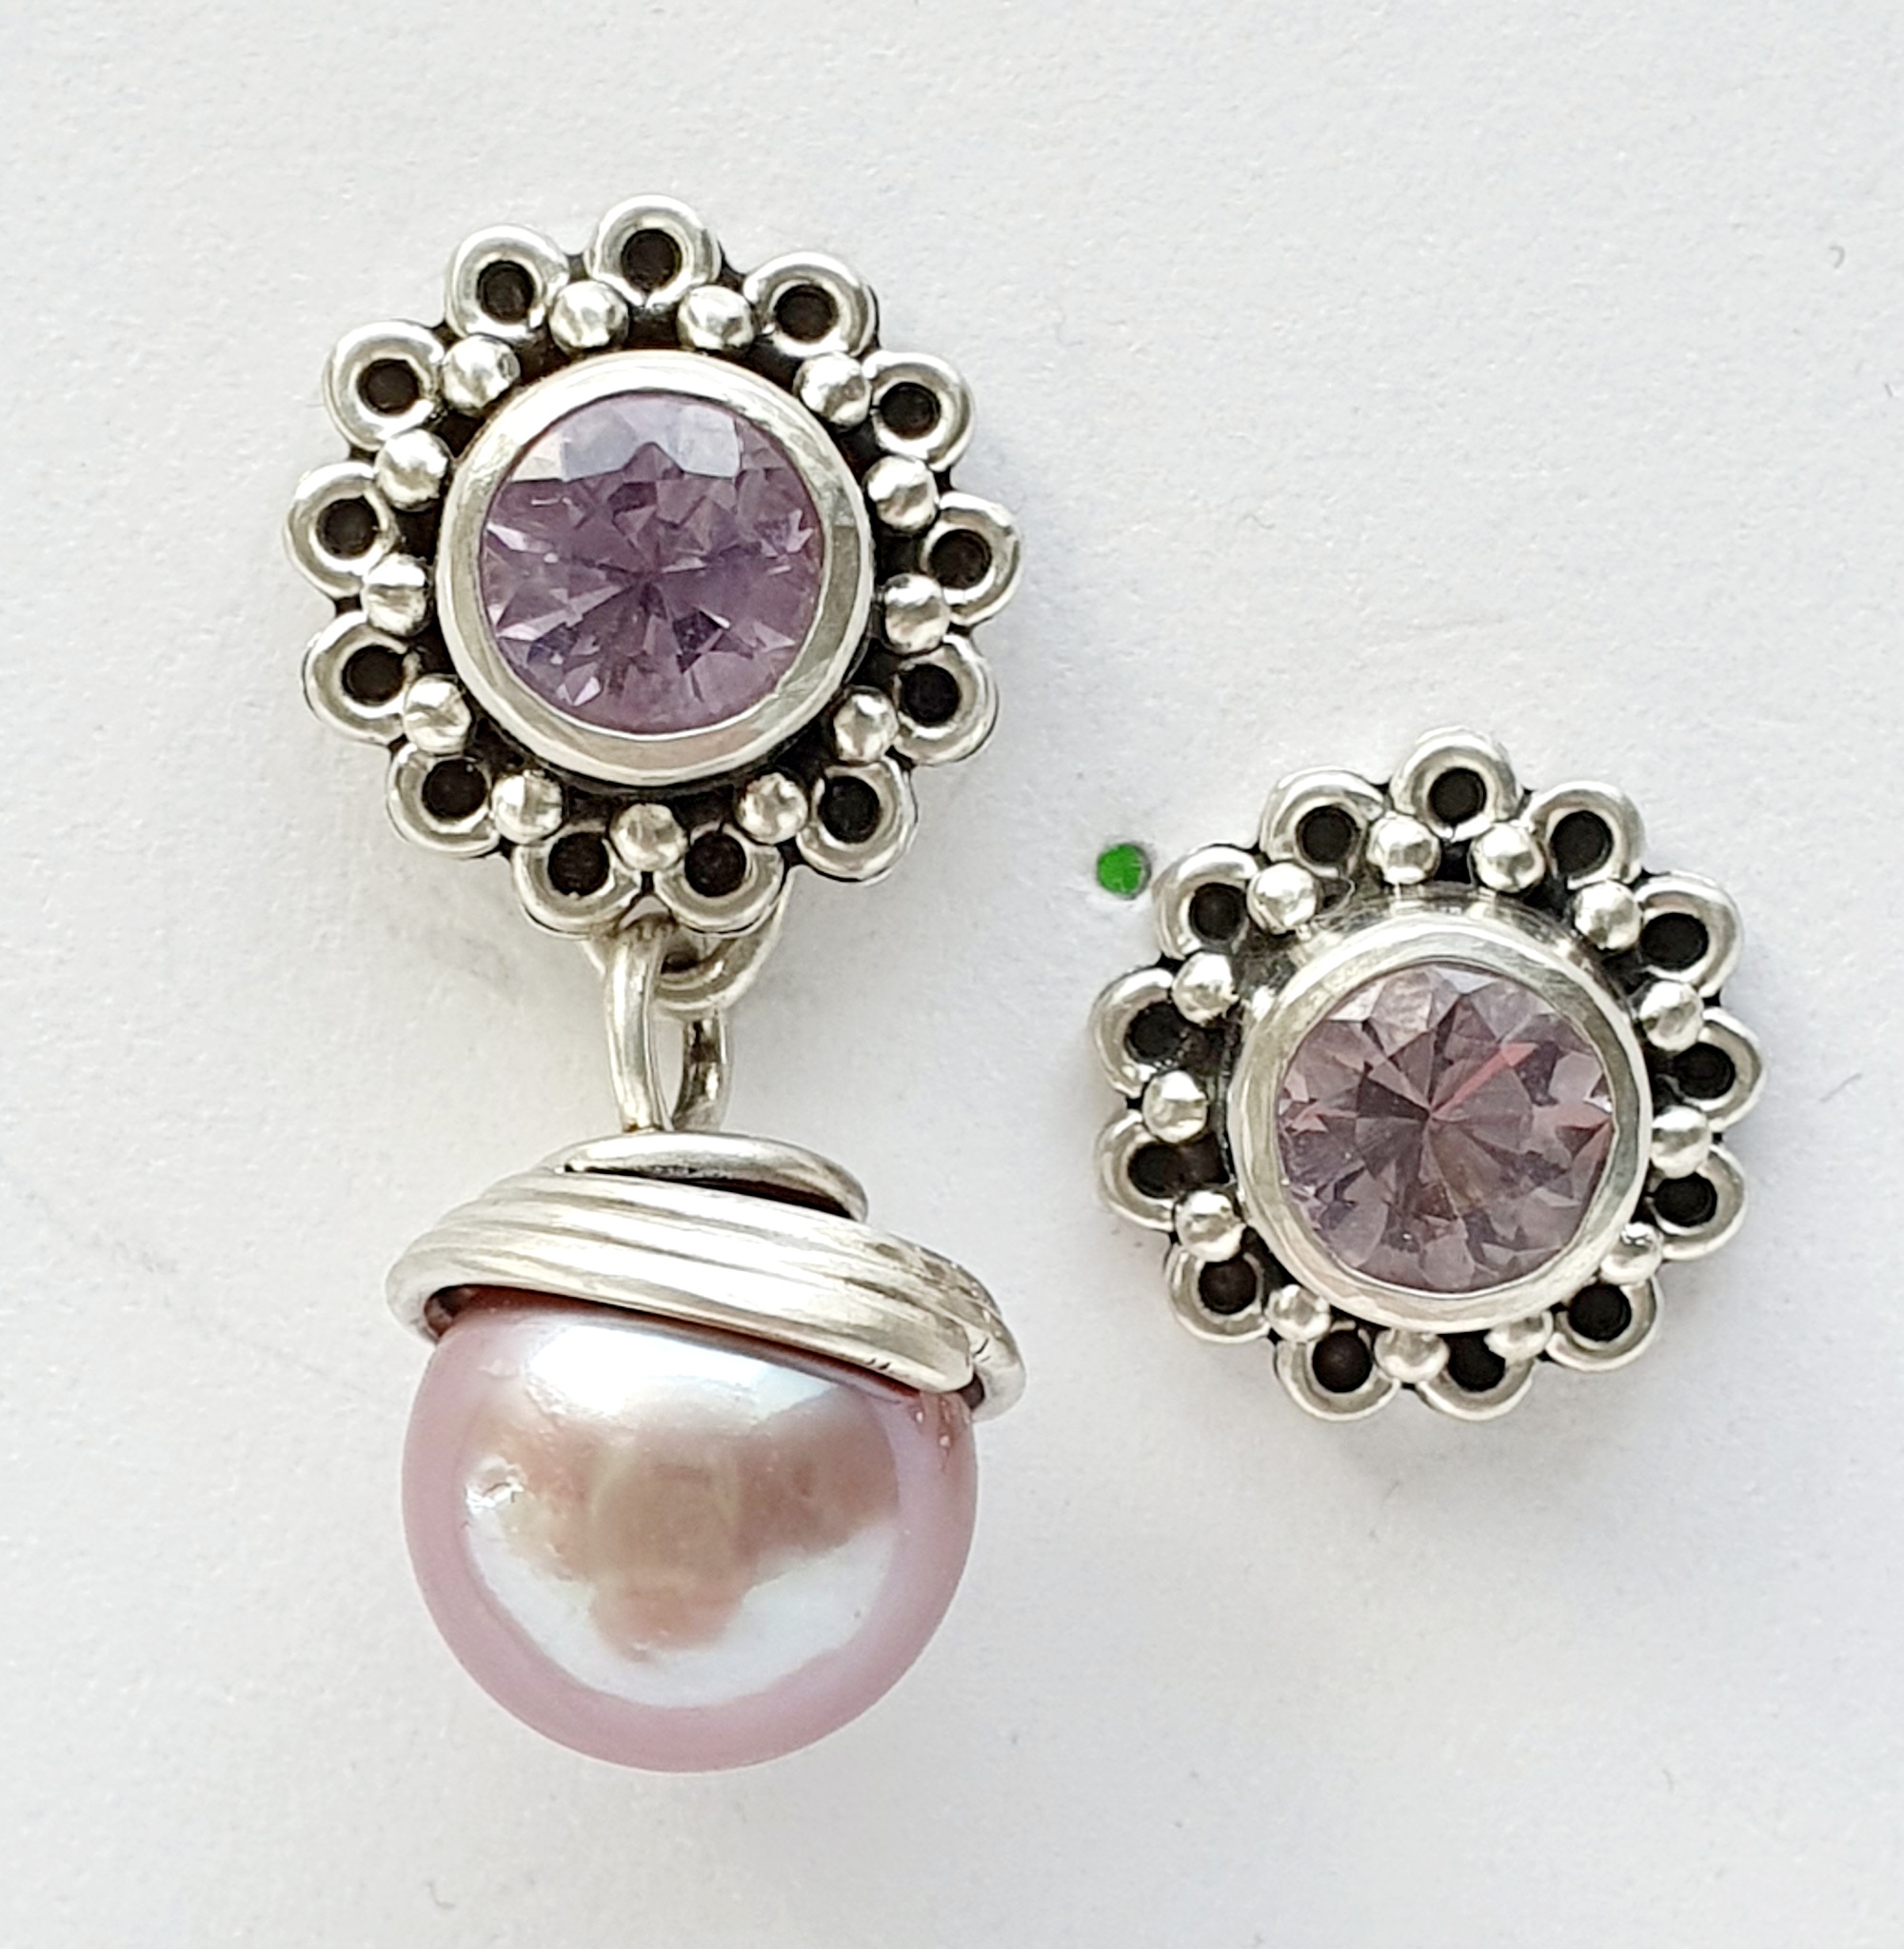 Amethyst violett in Silber gefasst und granuliert, Perlenanhänger Lavendel mit Drahthut